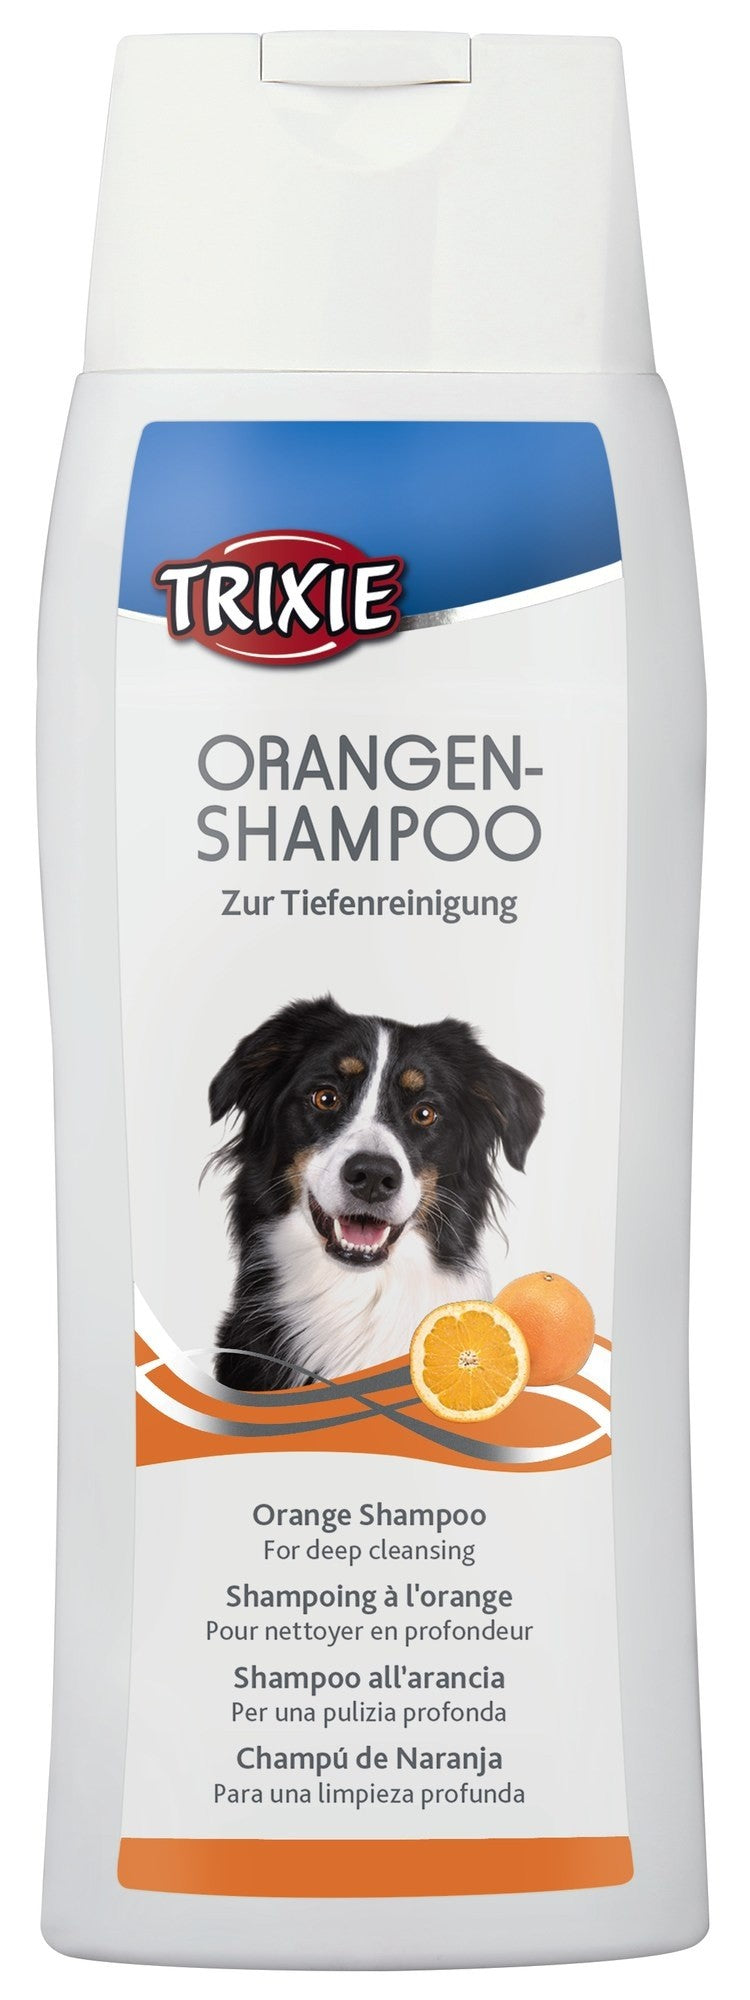 Orangen Shampoo, 250 ml